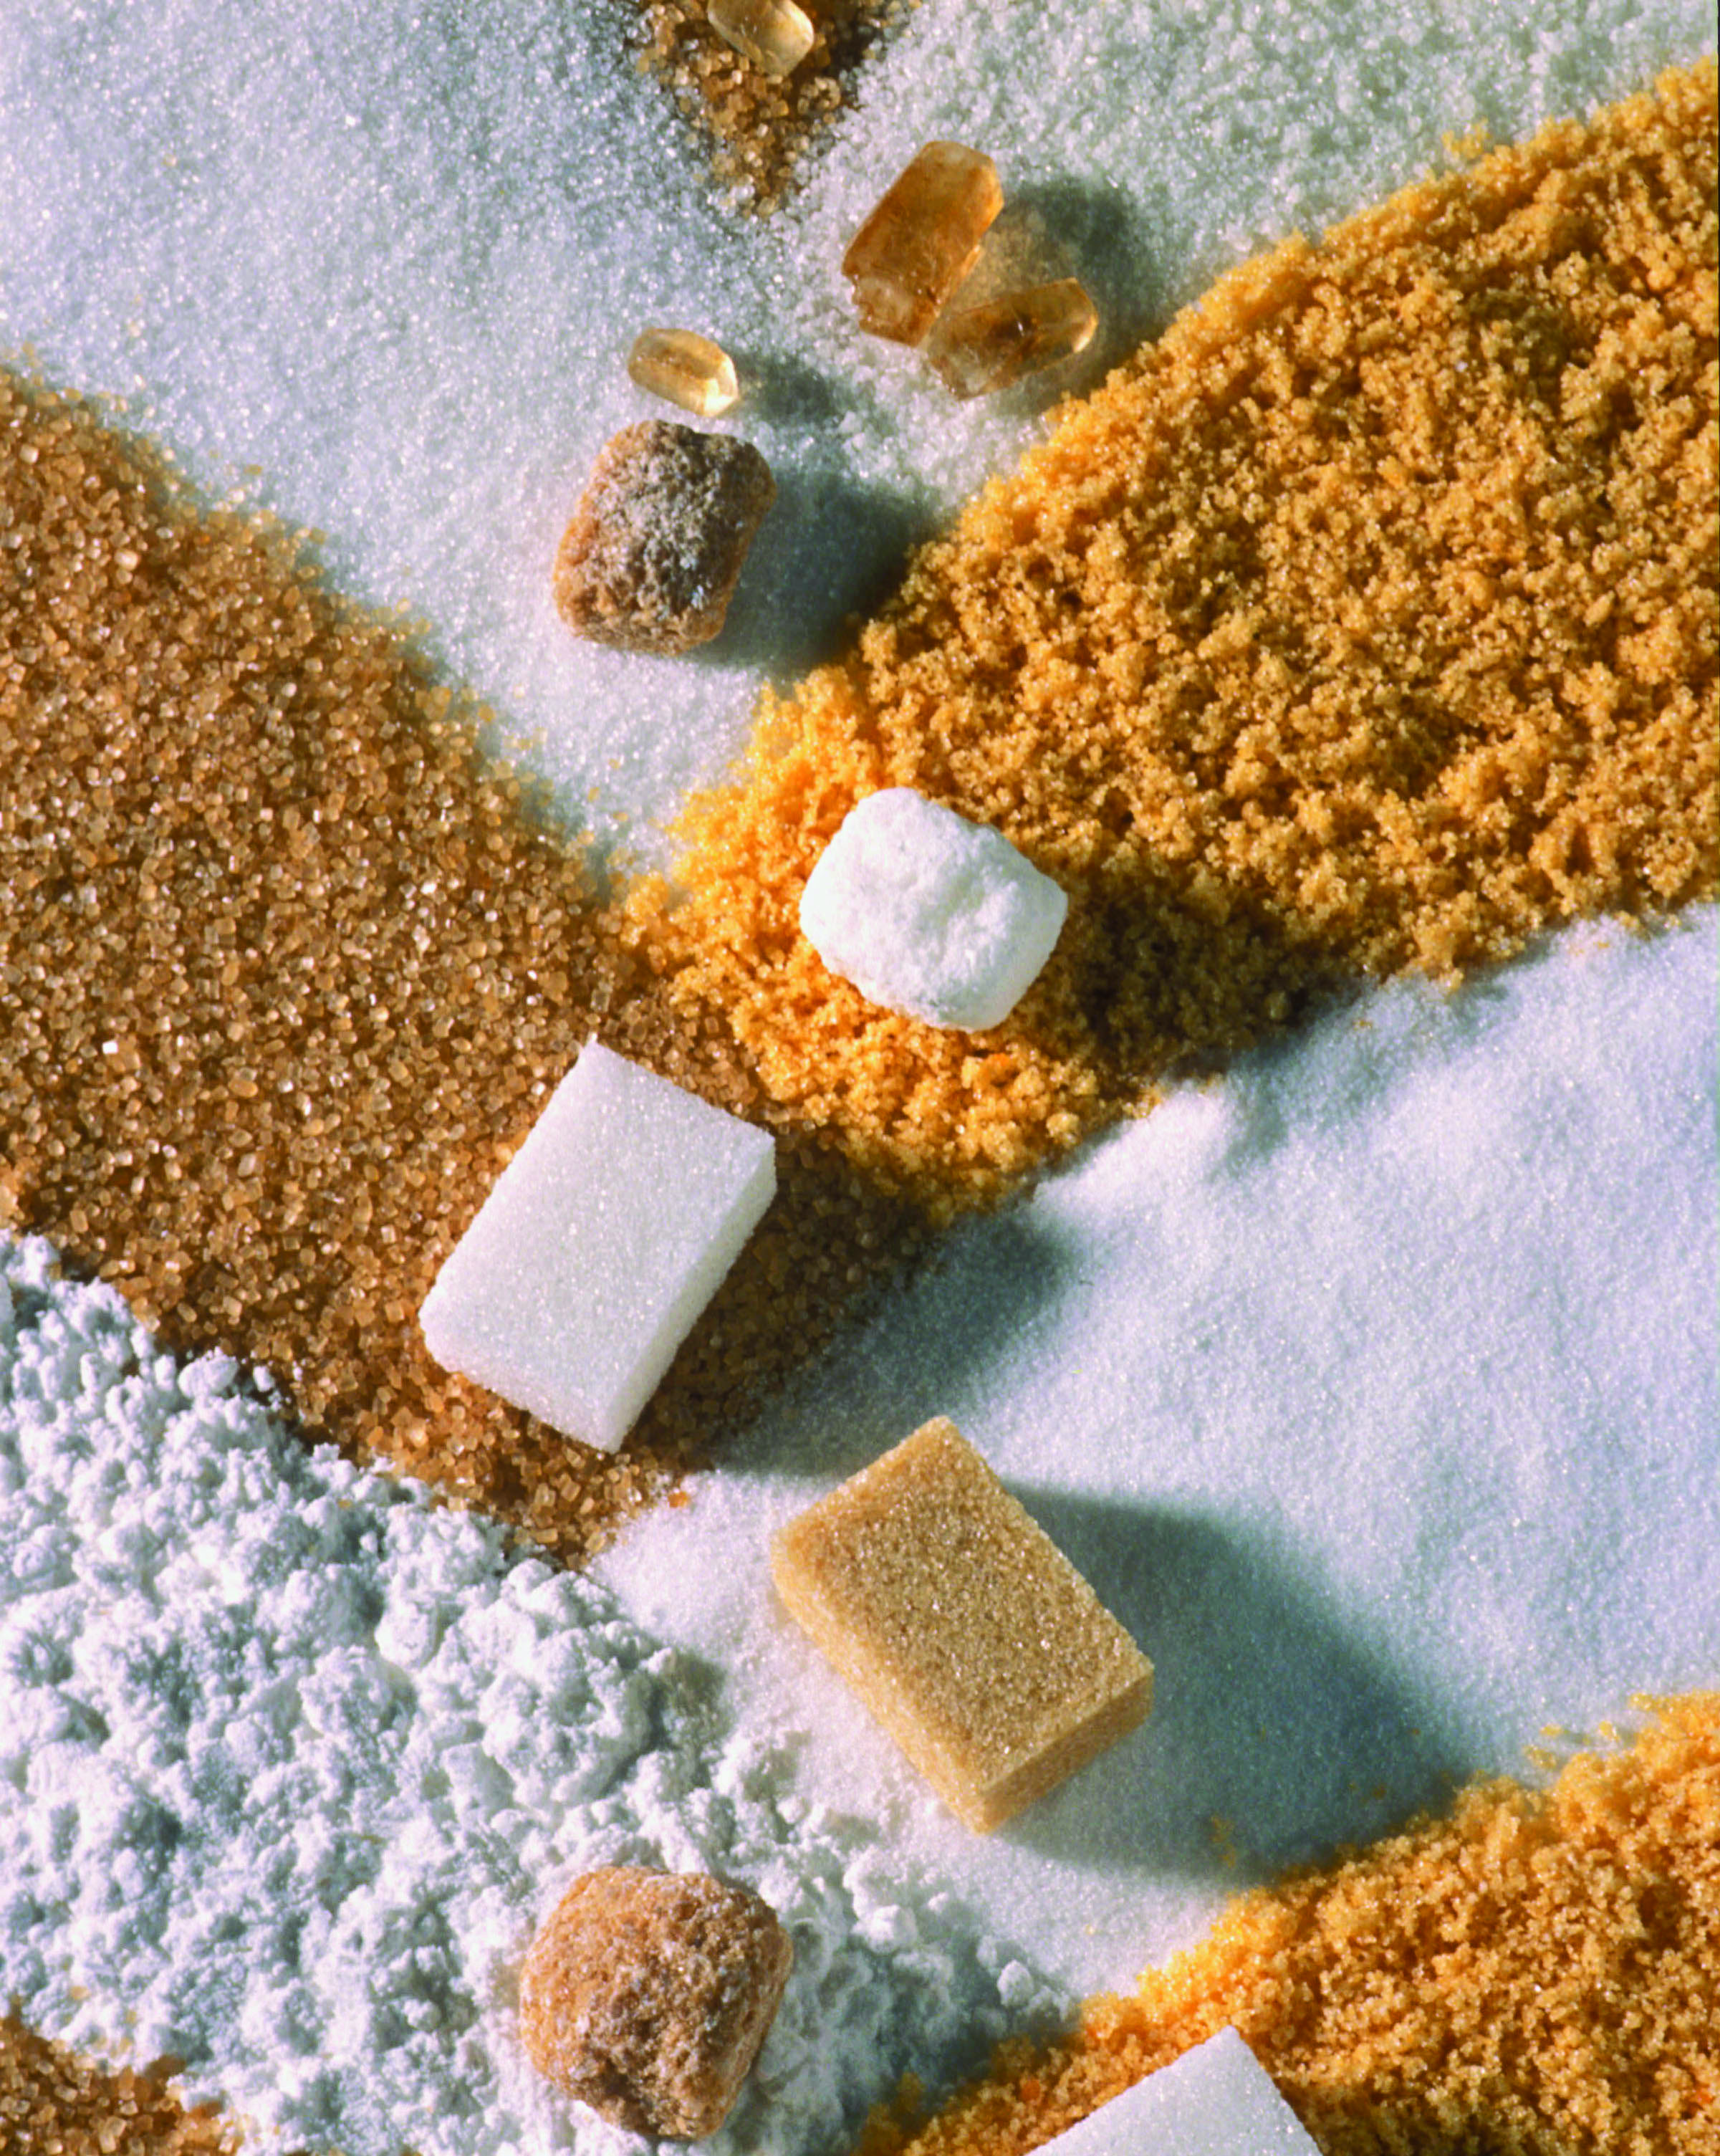 Remarquables performances environnementales de la production de sucre aux Pays-Bas